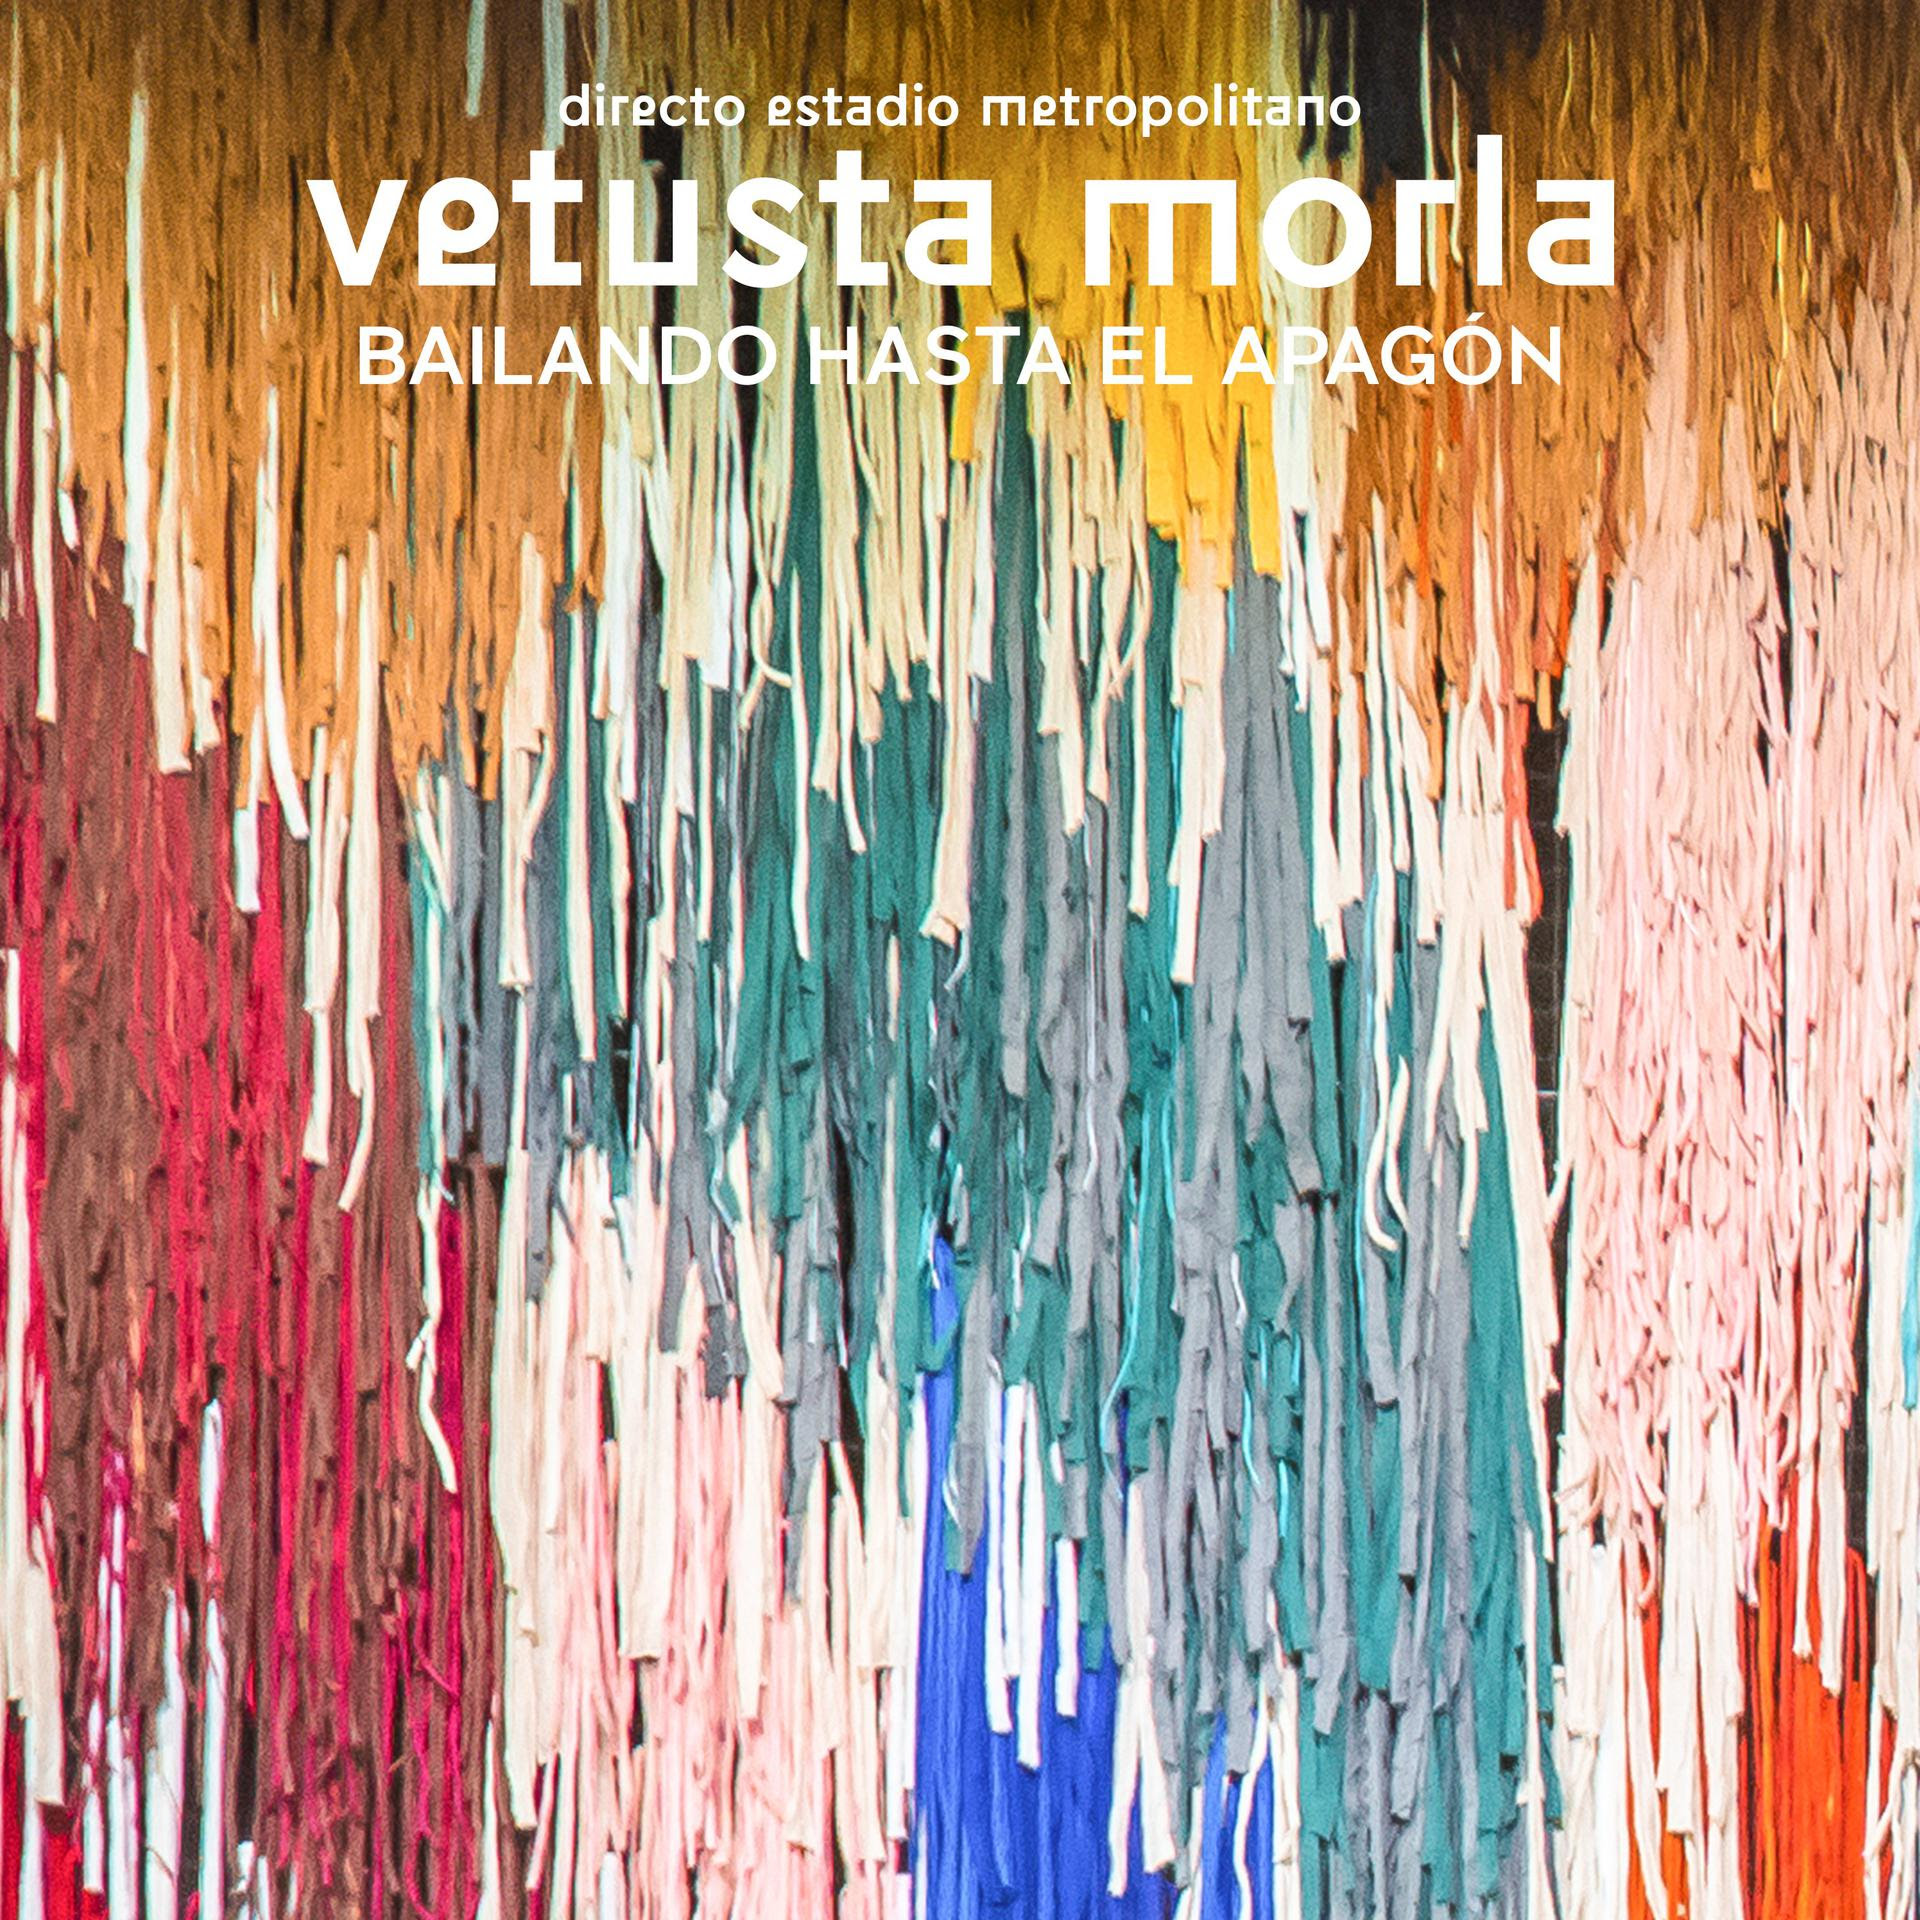 Vetusta Morla estrena el viernes 16 de diciembre Bailando Hasta el Apagón